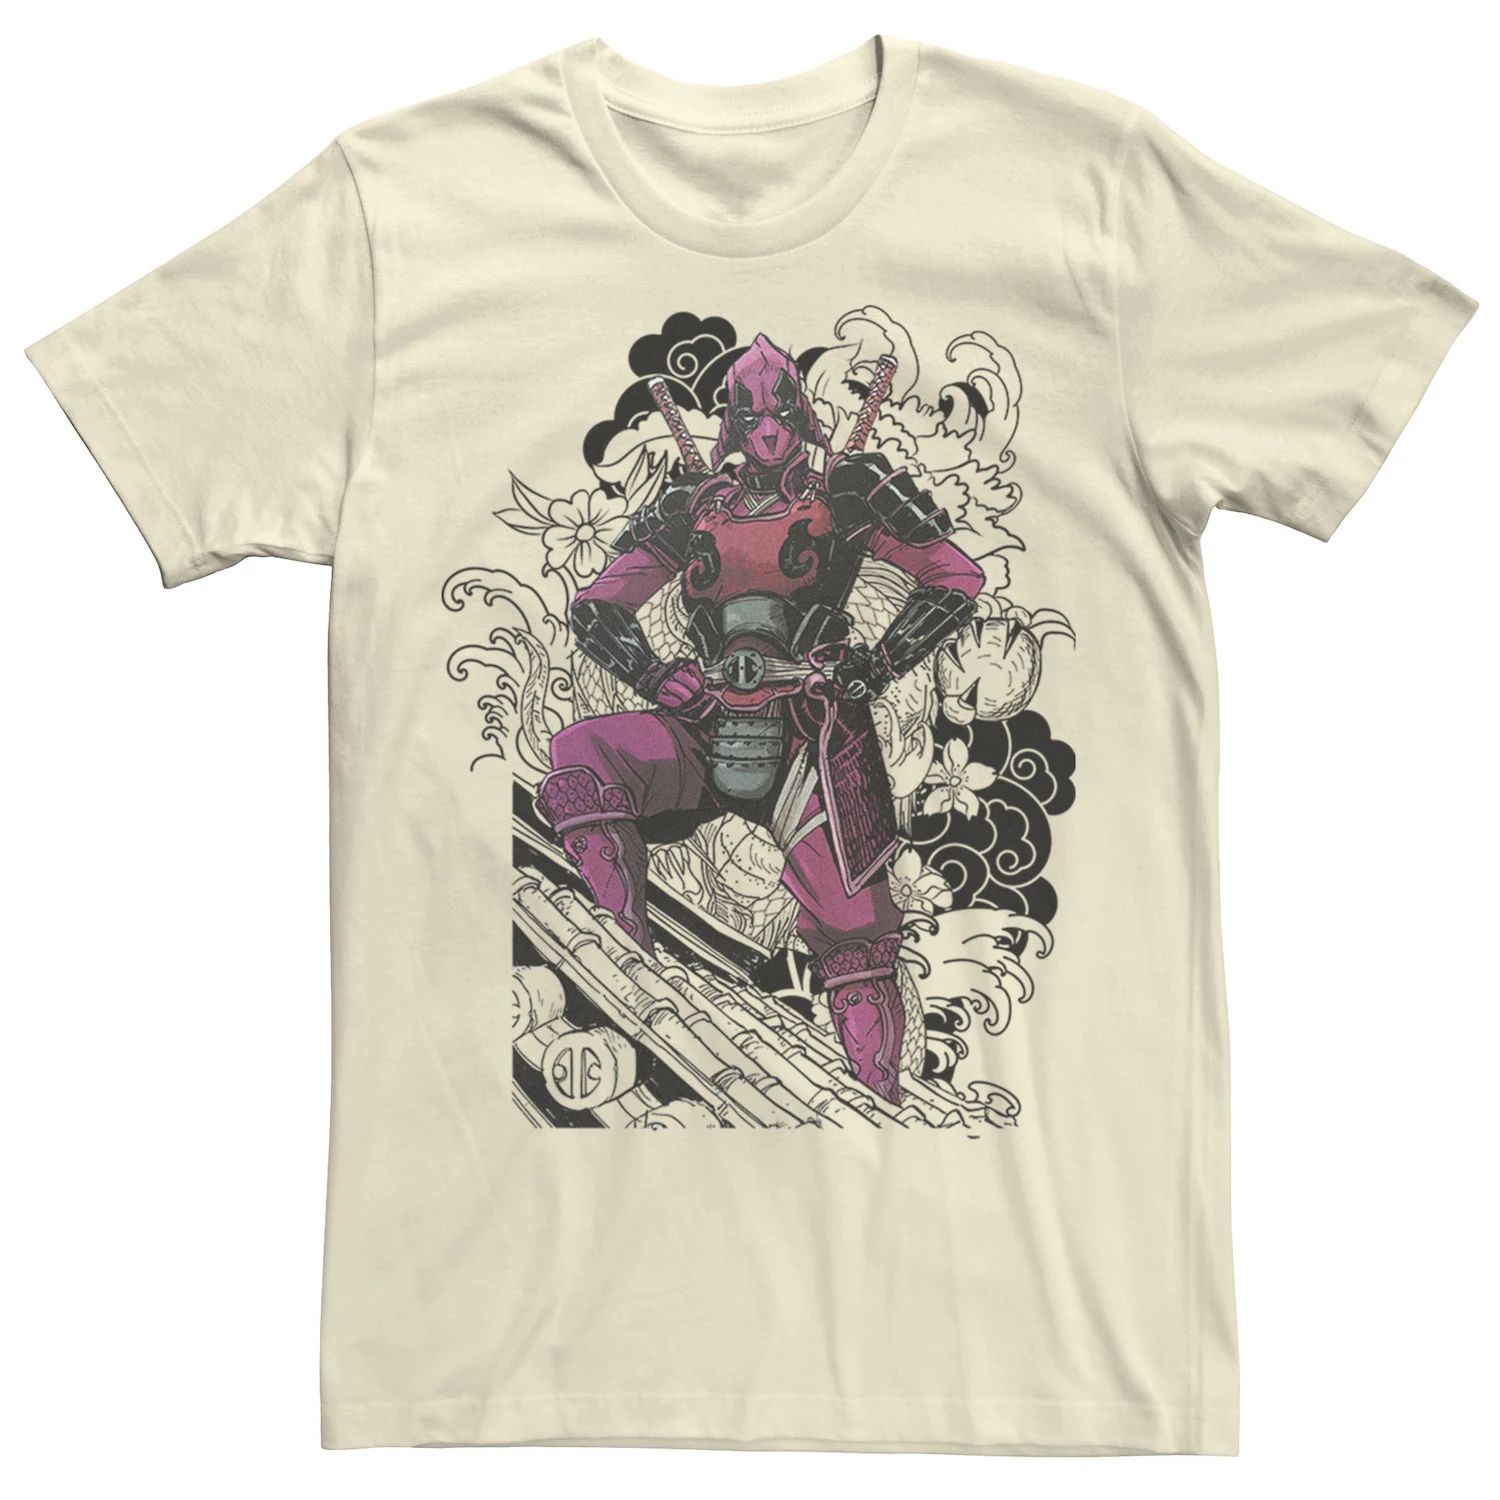 Мужская футболка с цветочным рисунком Deadpool Samurai Dragon Marvel